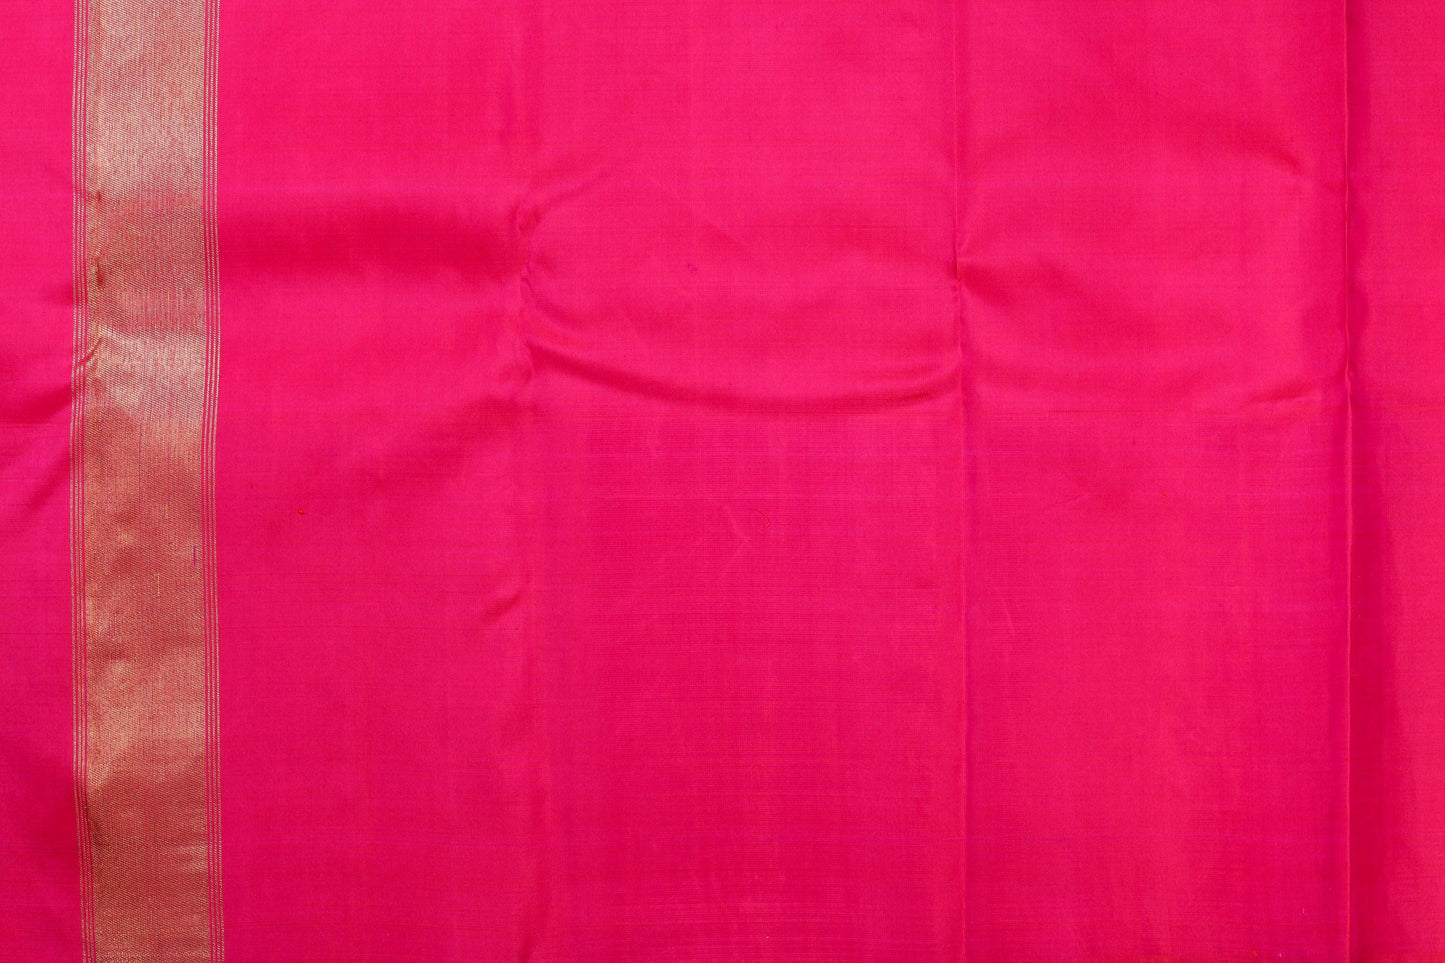 Panjavarnam Kanjivaram Silk Saree PVF 0218 1041 - Silk Sari - Panjavarnam